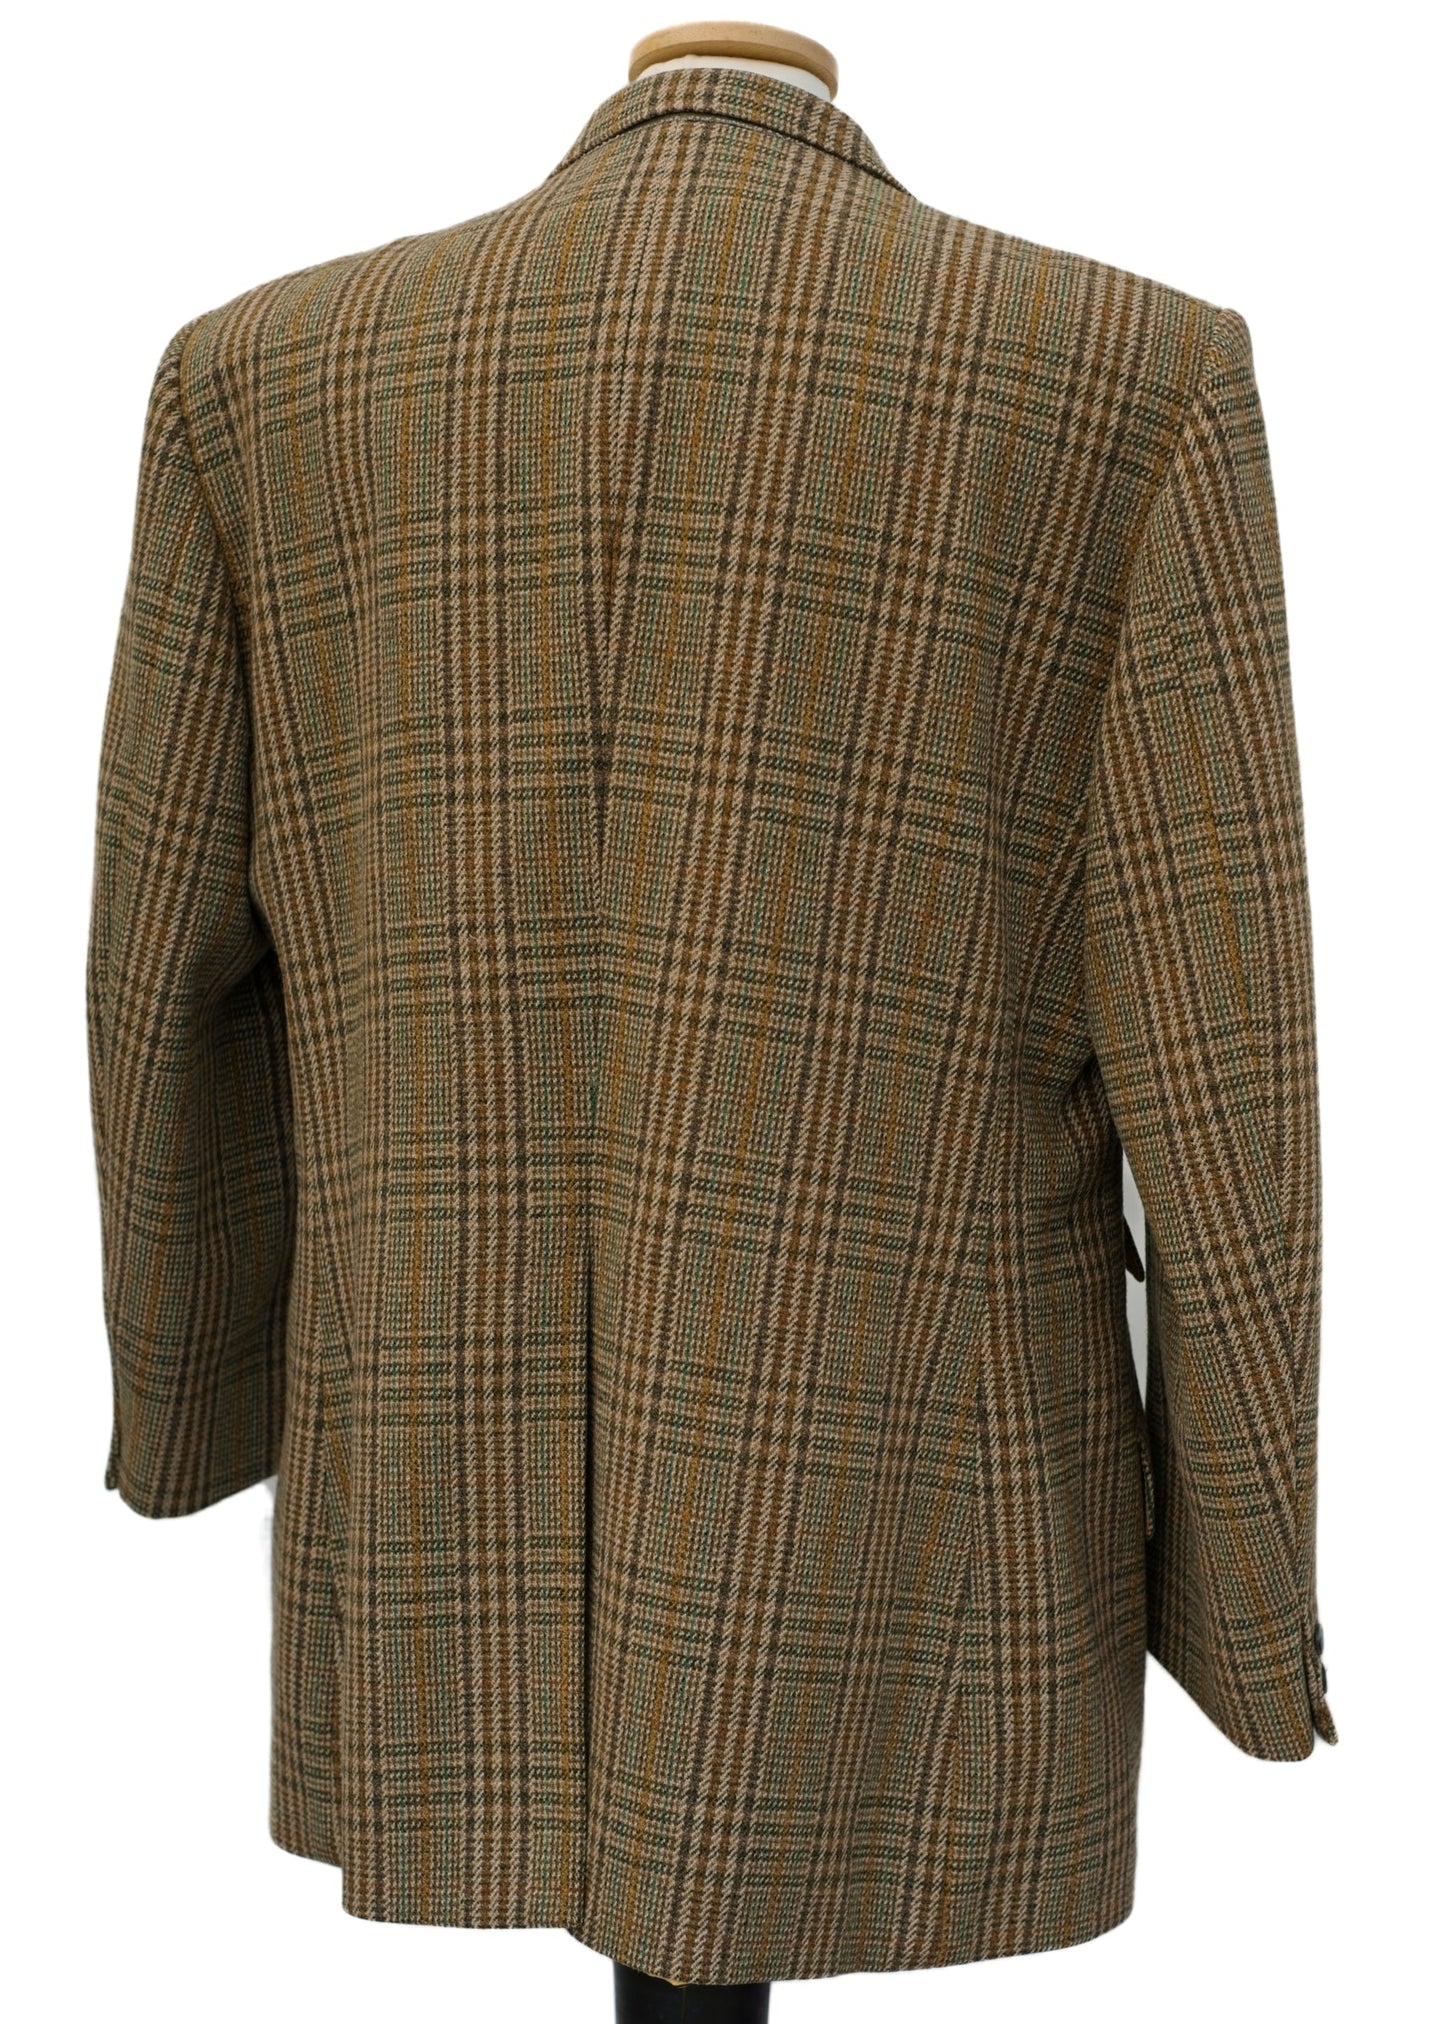 Tweed Check Hacking Jacket • Bladen Supasax • 46R